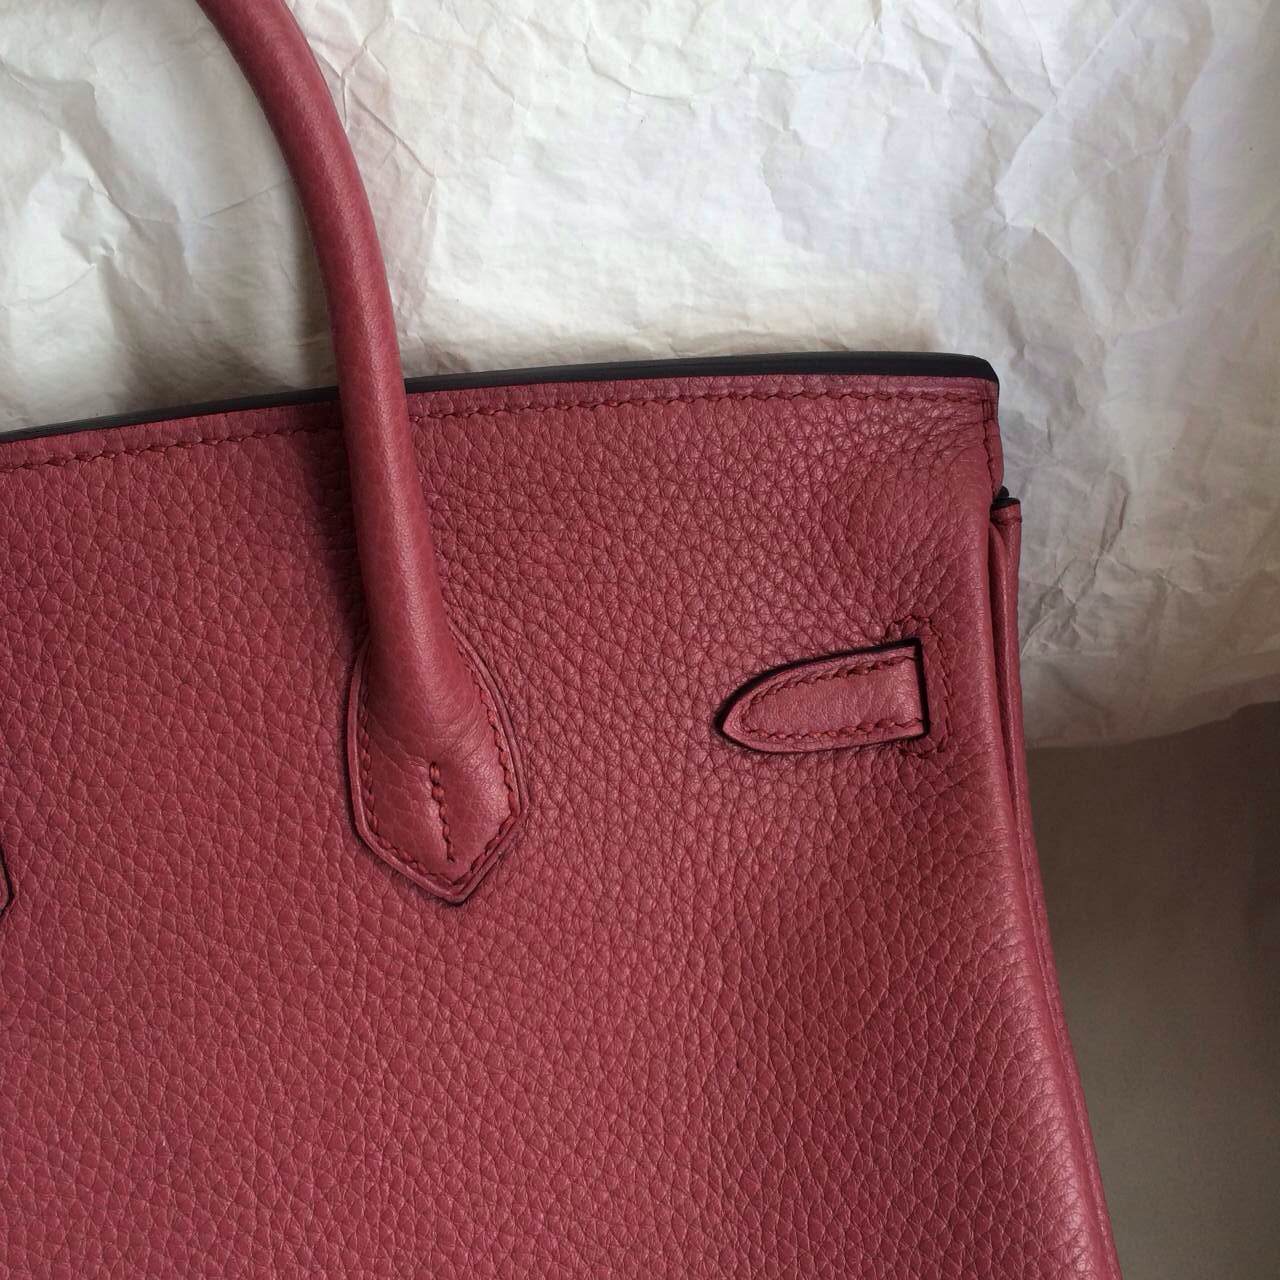 New Hermes Birkin Bag 35cm Bois De Rose France Togo Leather Palladium-hardware